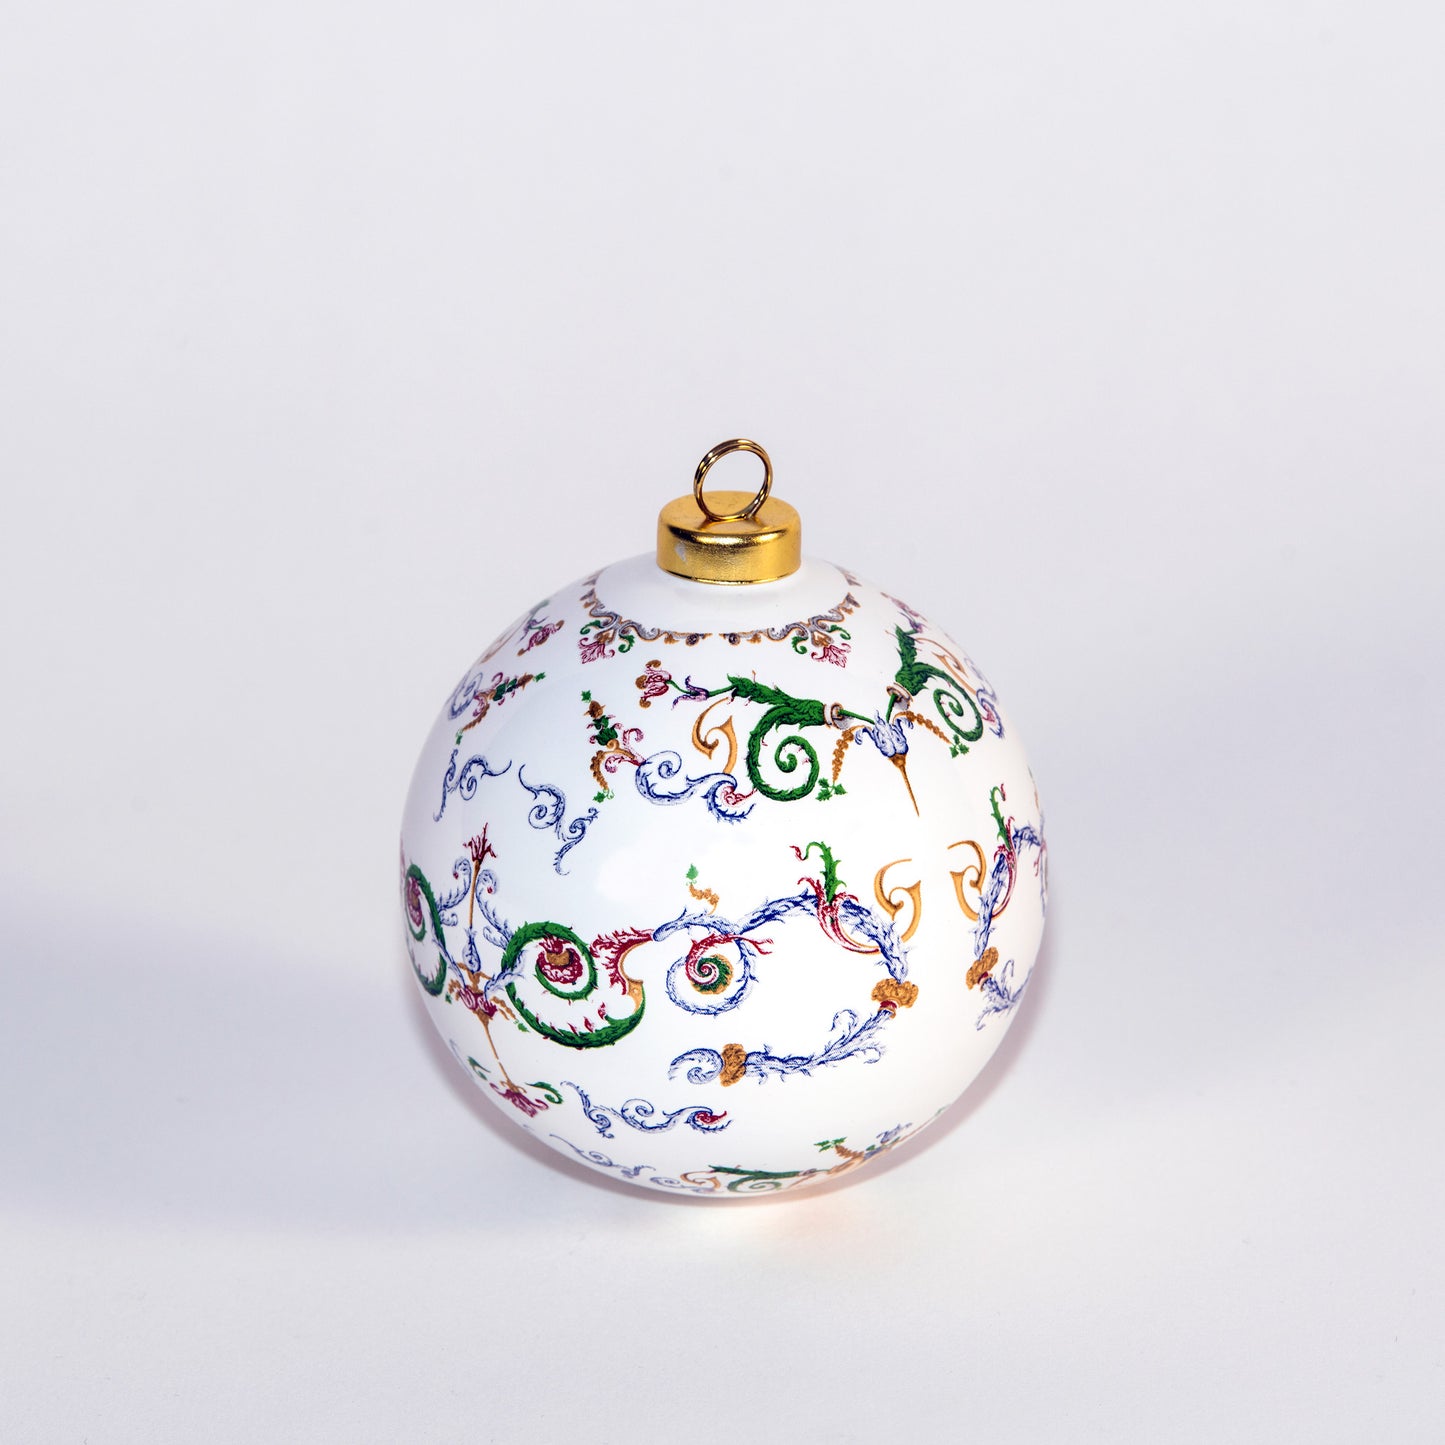 Bola para decorar a árvore de natal com imagem alusiva aos tetos da capela de S. Miguel